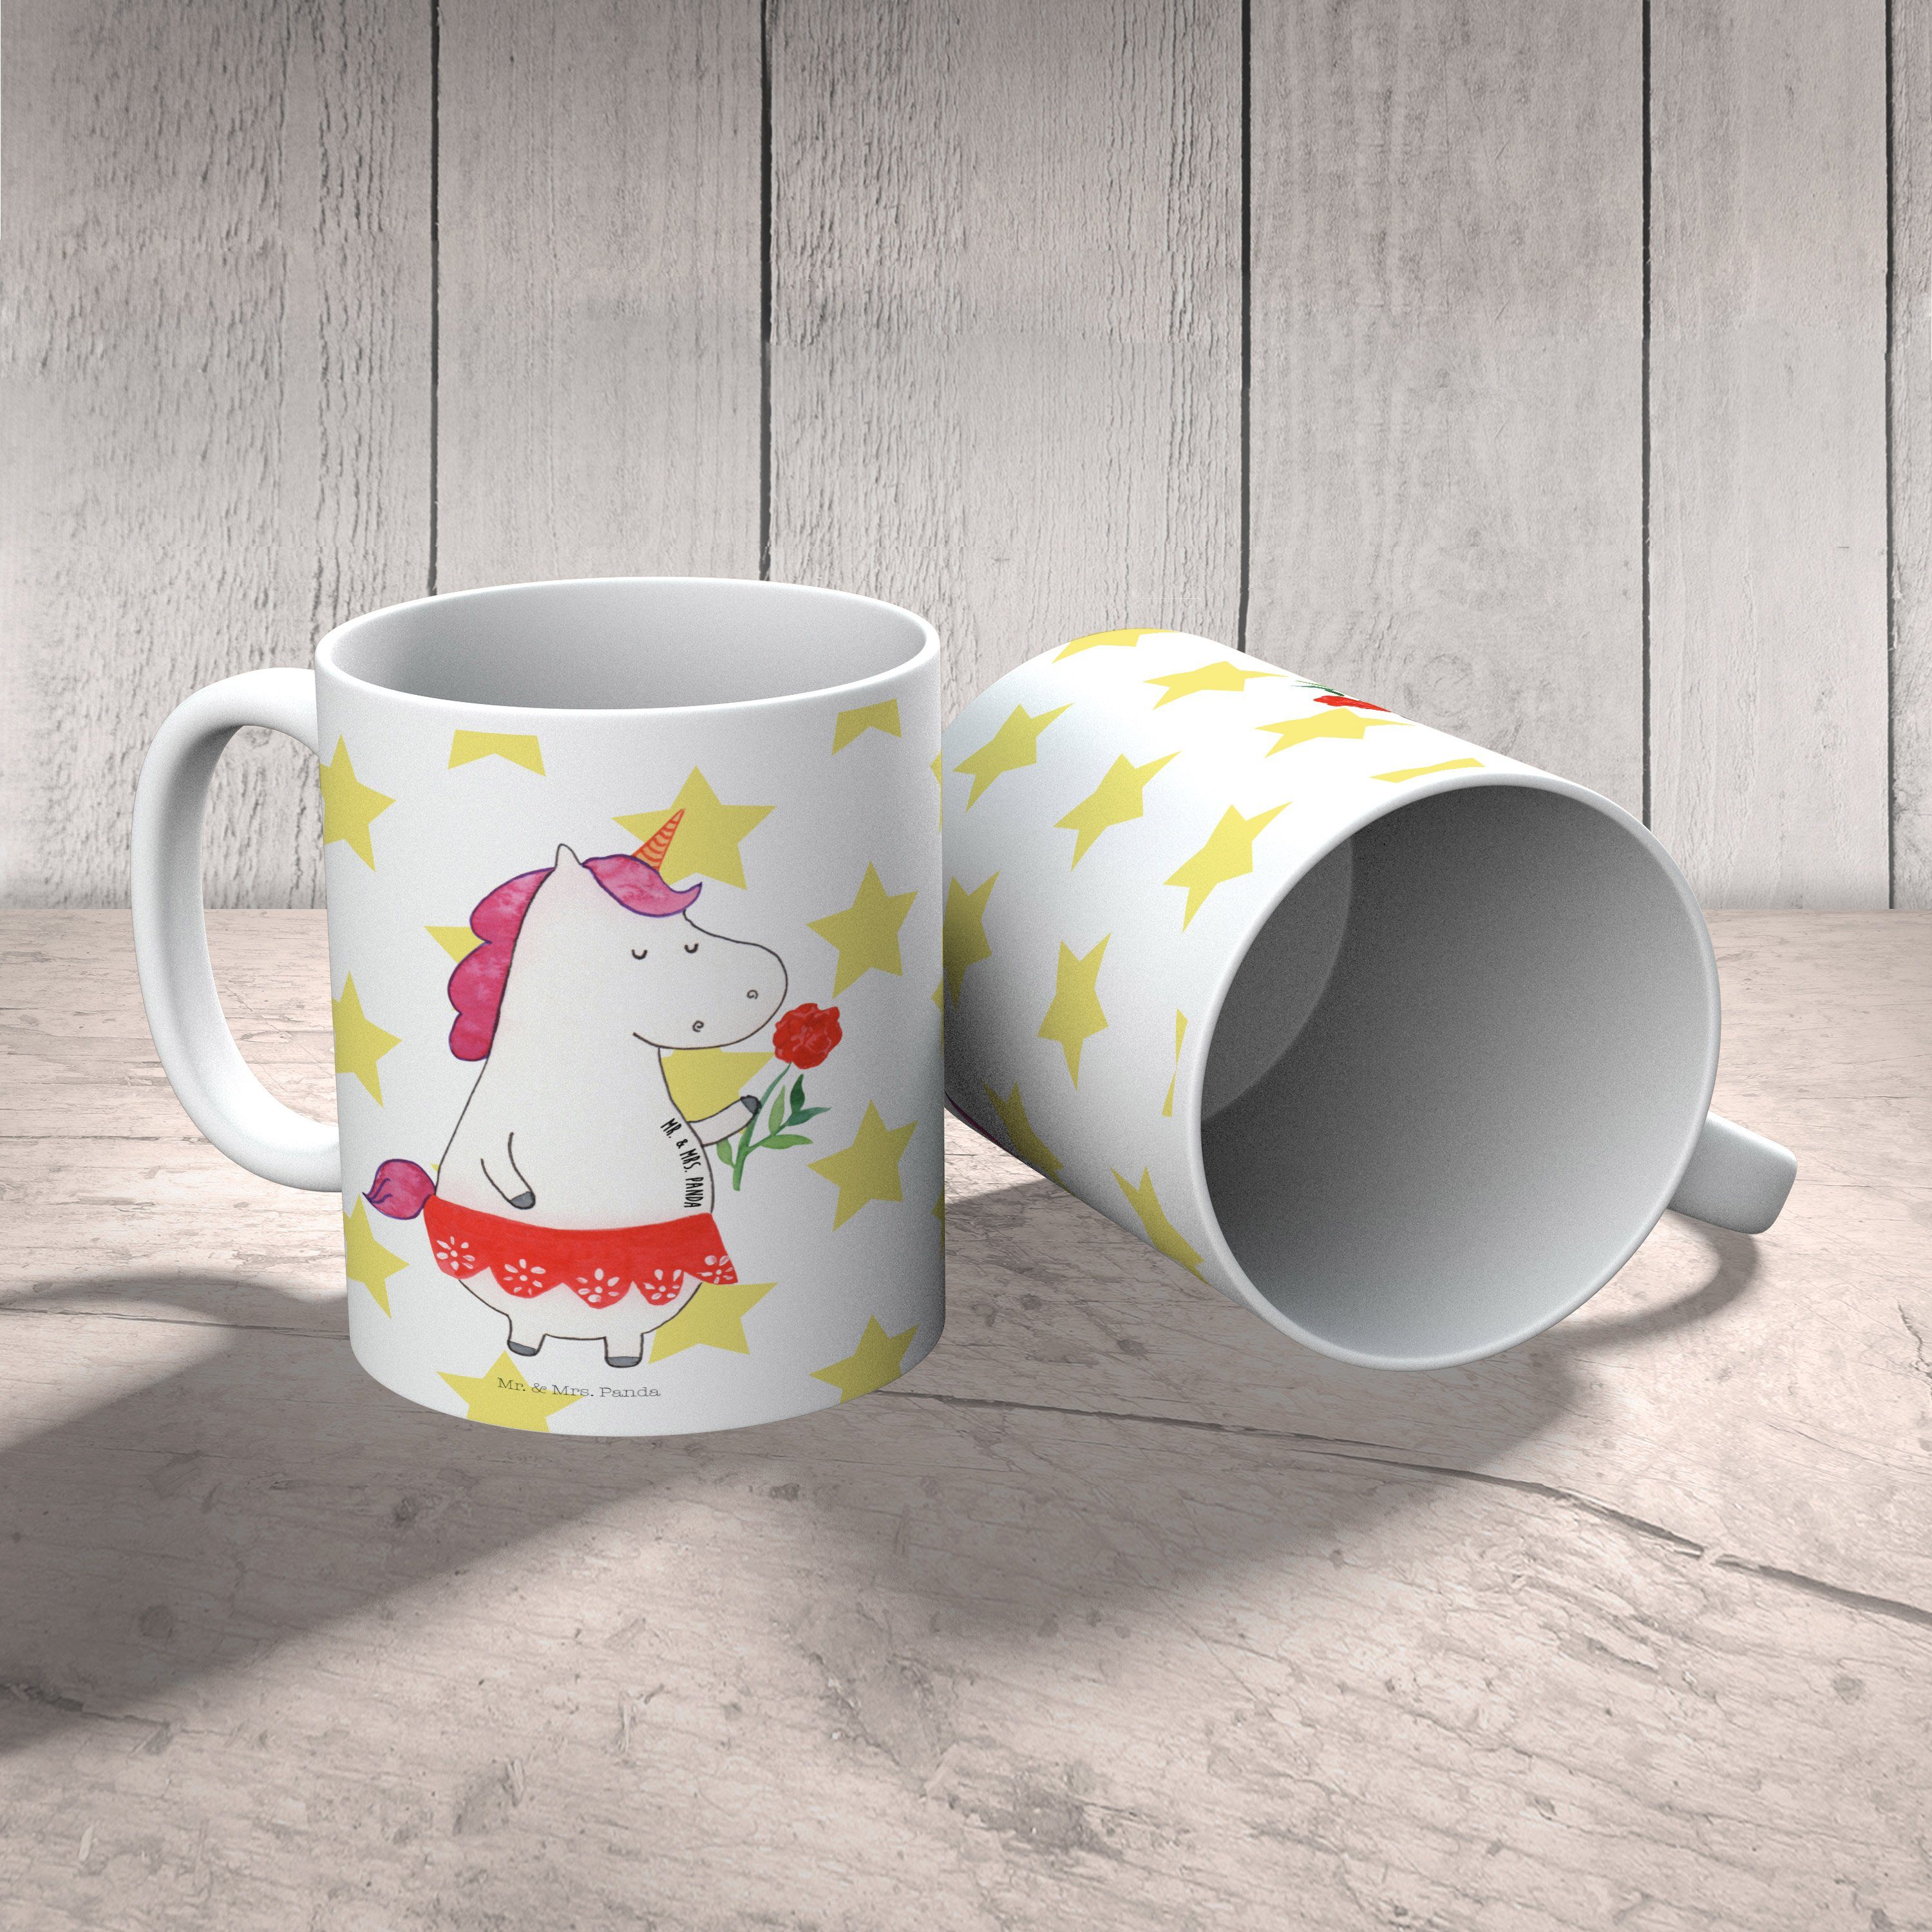 Mr. Mrs. - Sprüche, Tasse, Weiß Geschenk, & Dame Keramik Tasse Kaffee, Tasse - Einhorn Unicorn, Panda